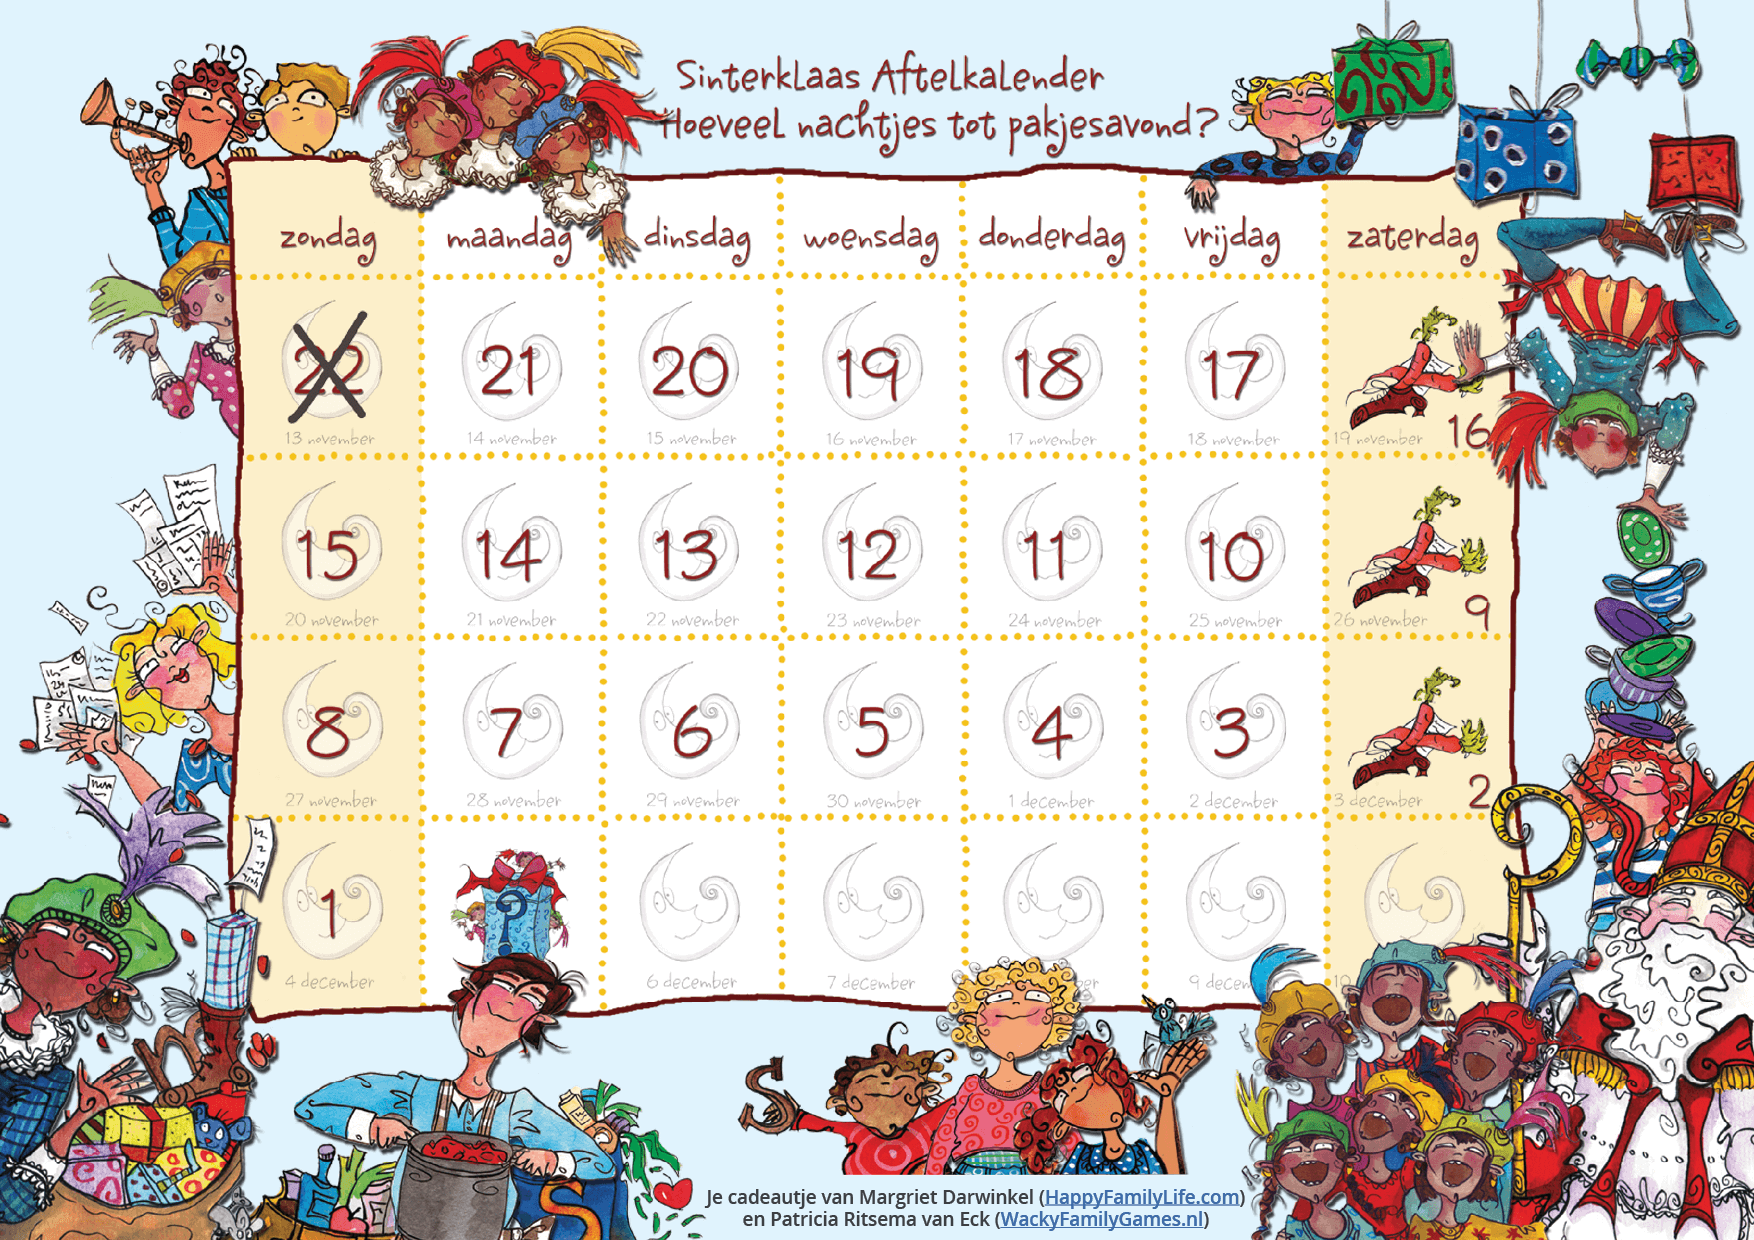 Sinterklaas Aftelkalender - aftellen naar pakjesavond (4 versies met de oude illustraties)